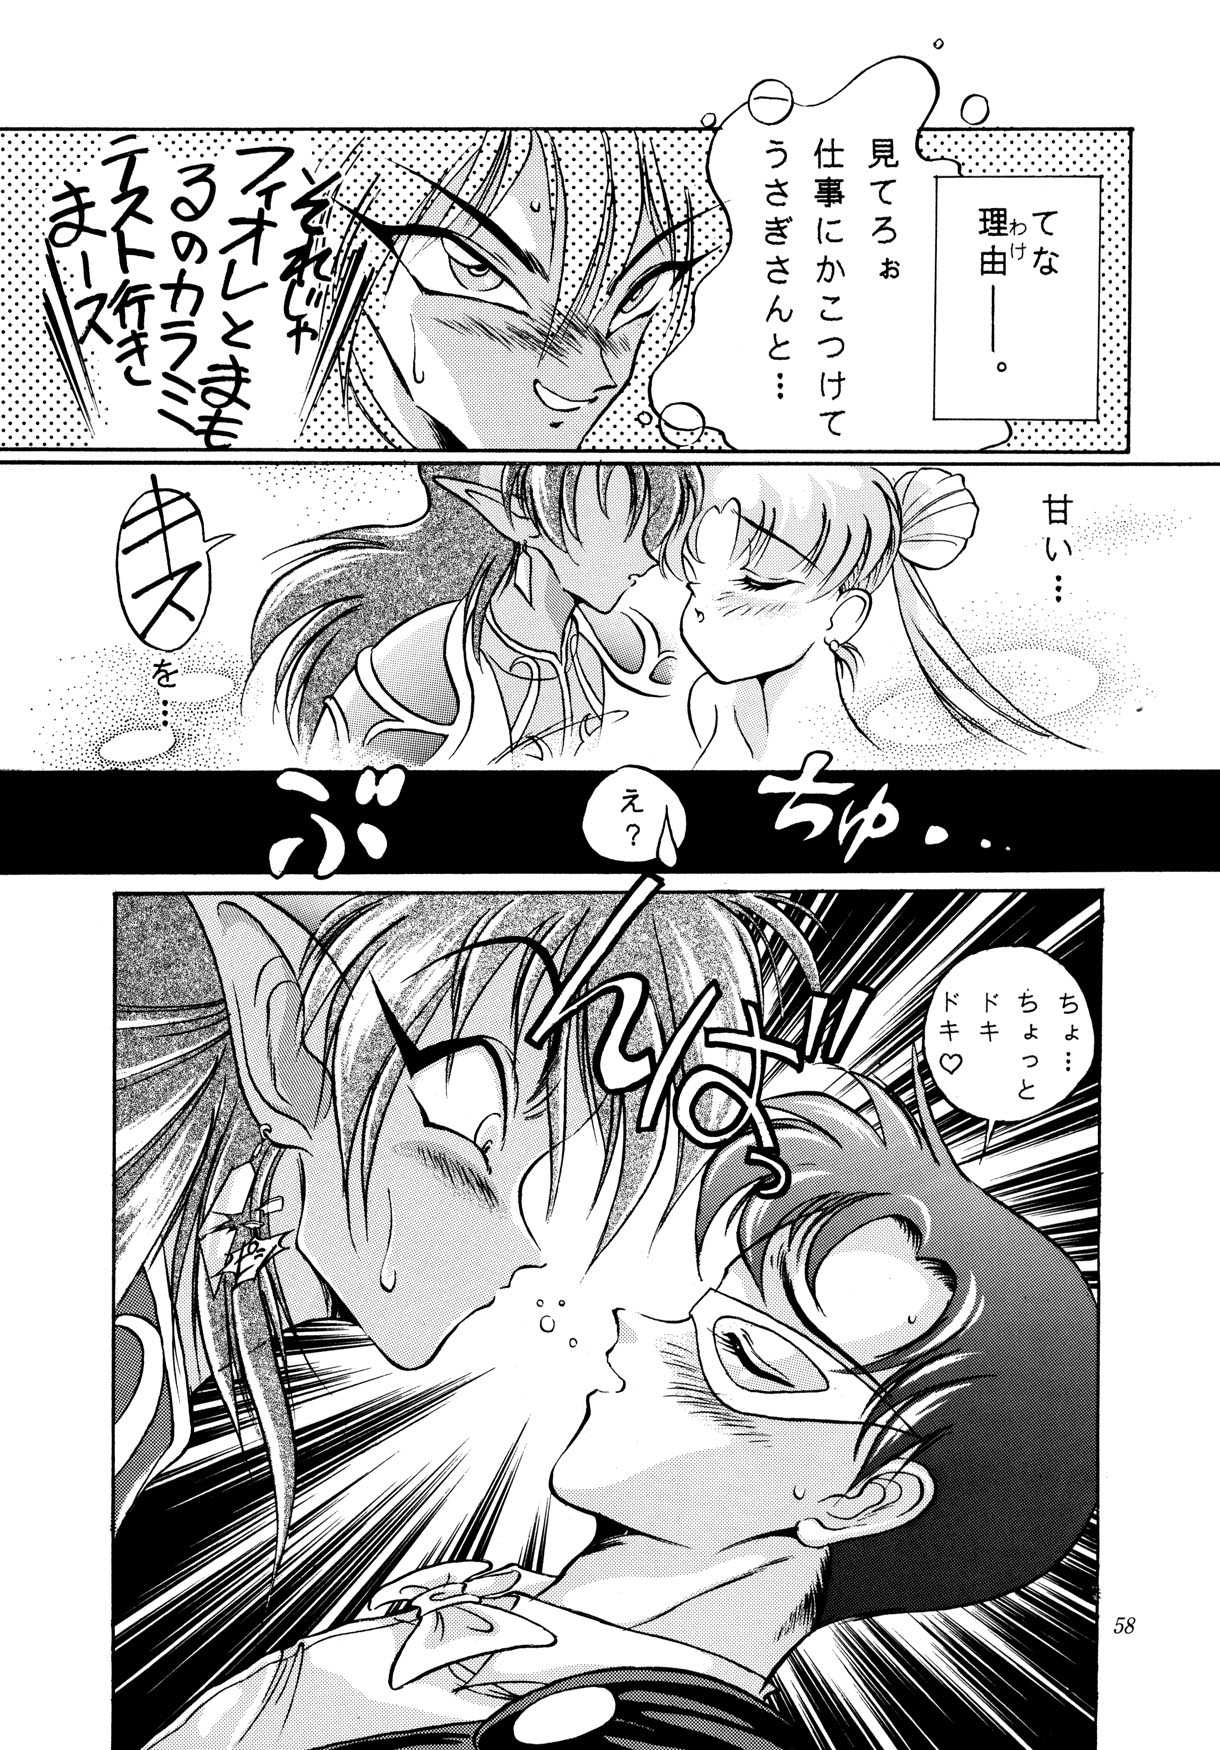 Special [Sailor Moon] 